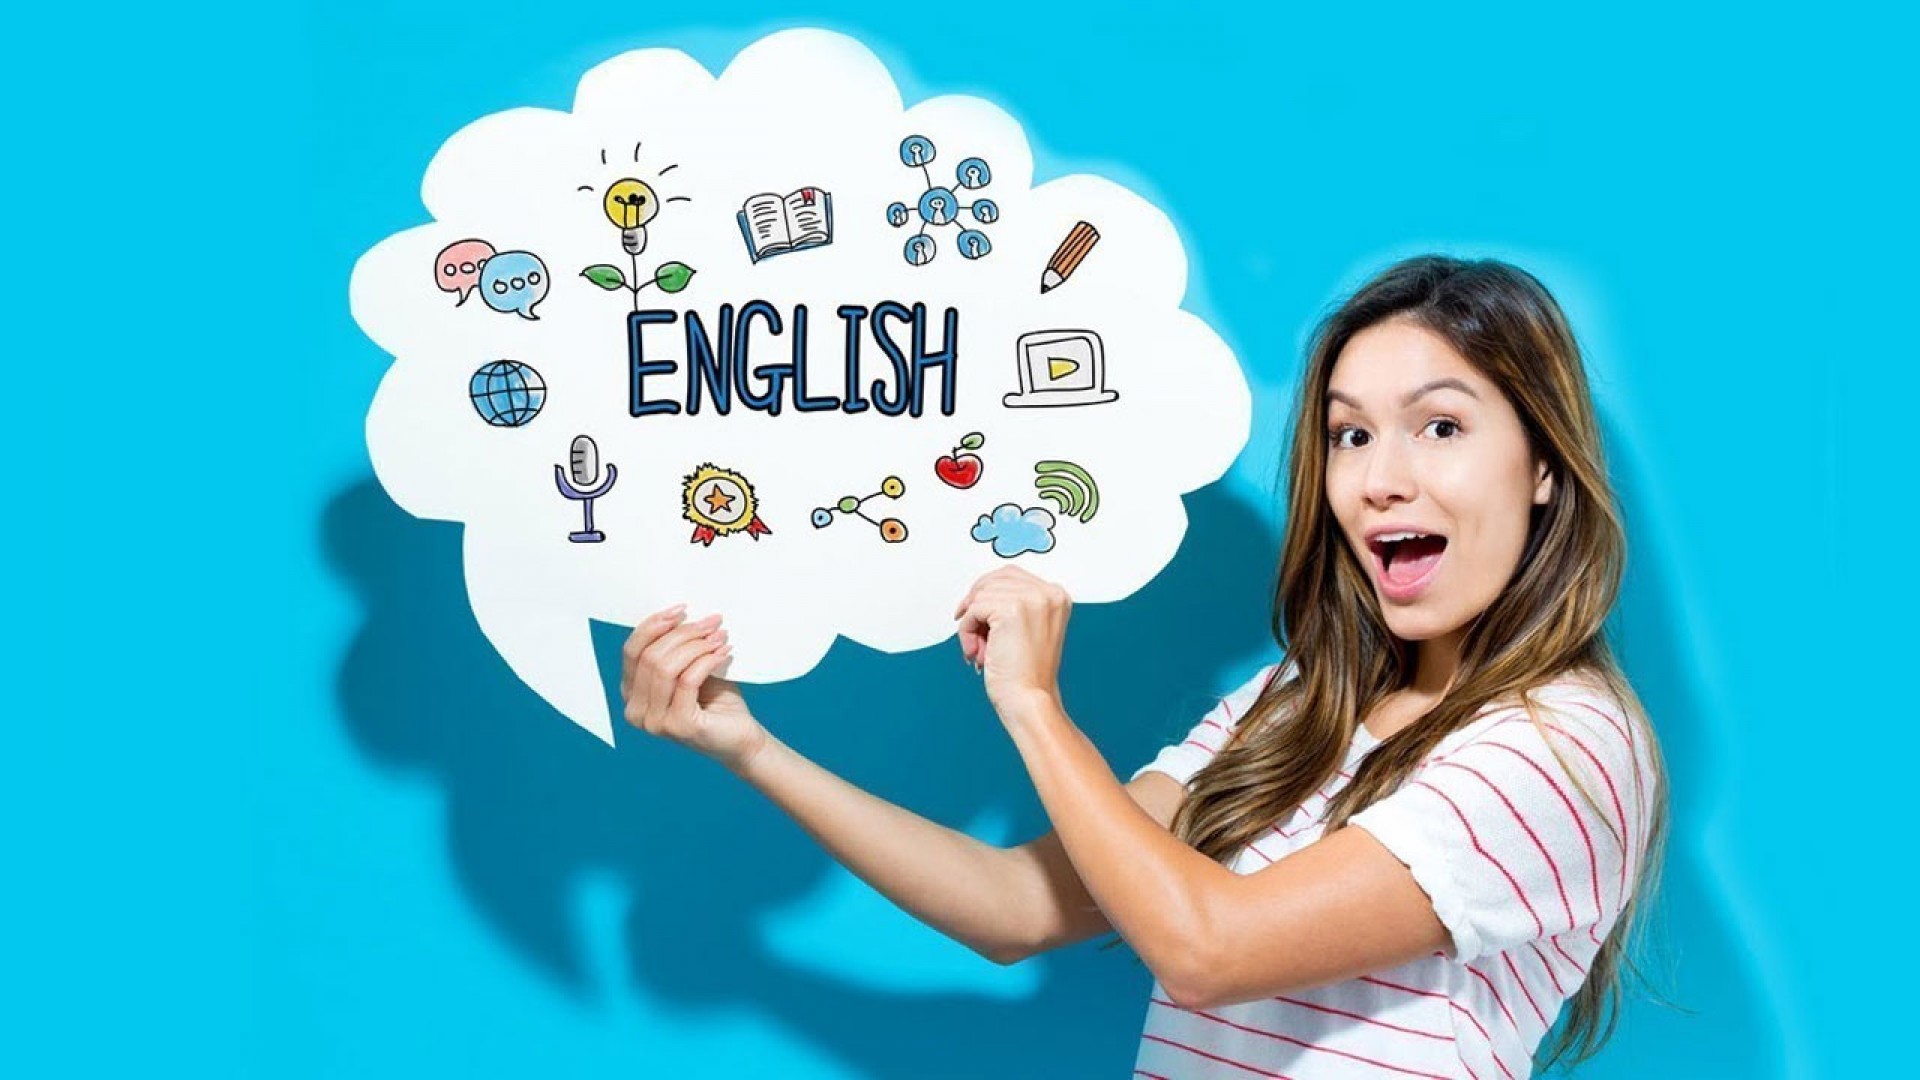 Học tiếng Anh mỗi ngày 15 phút mang lại hiệu quả bất ngờ!